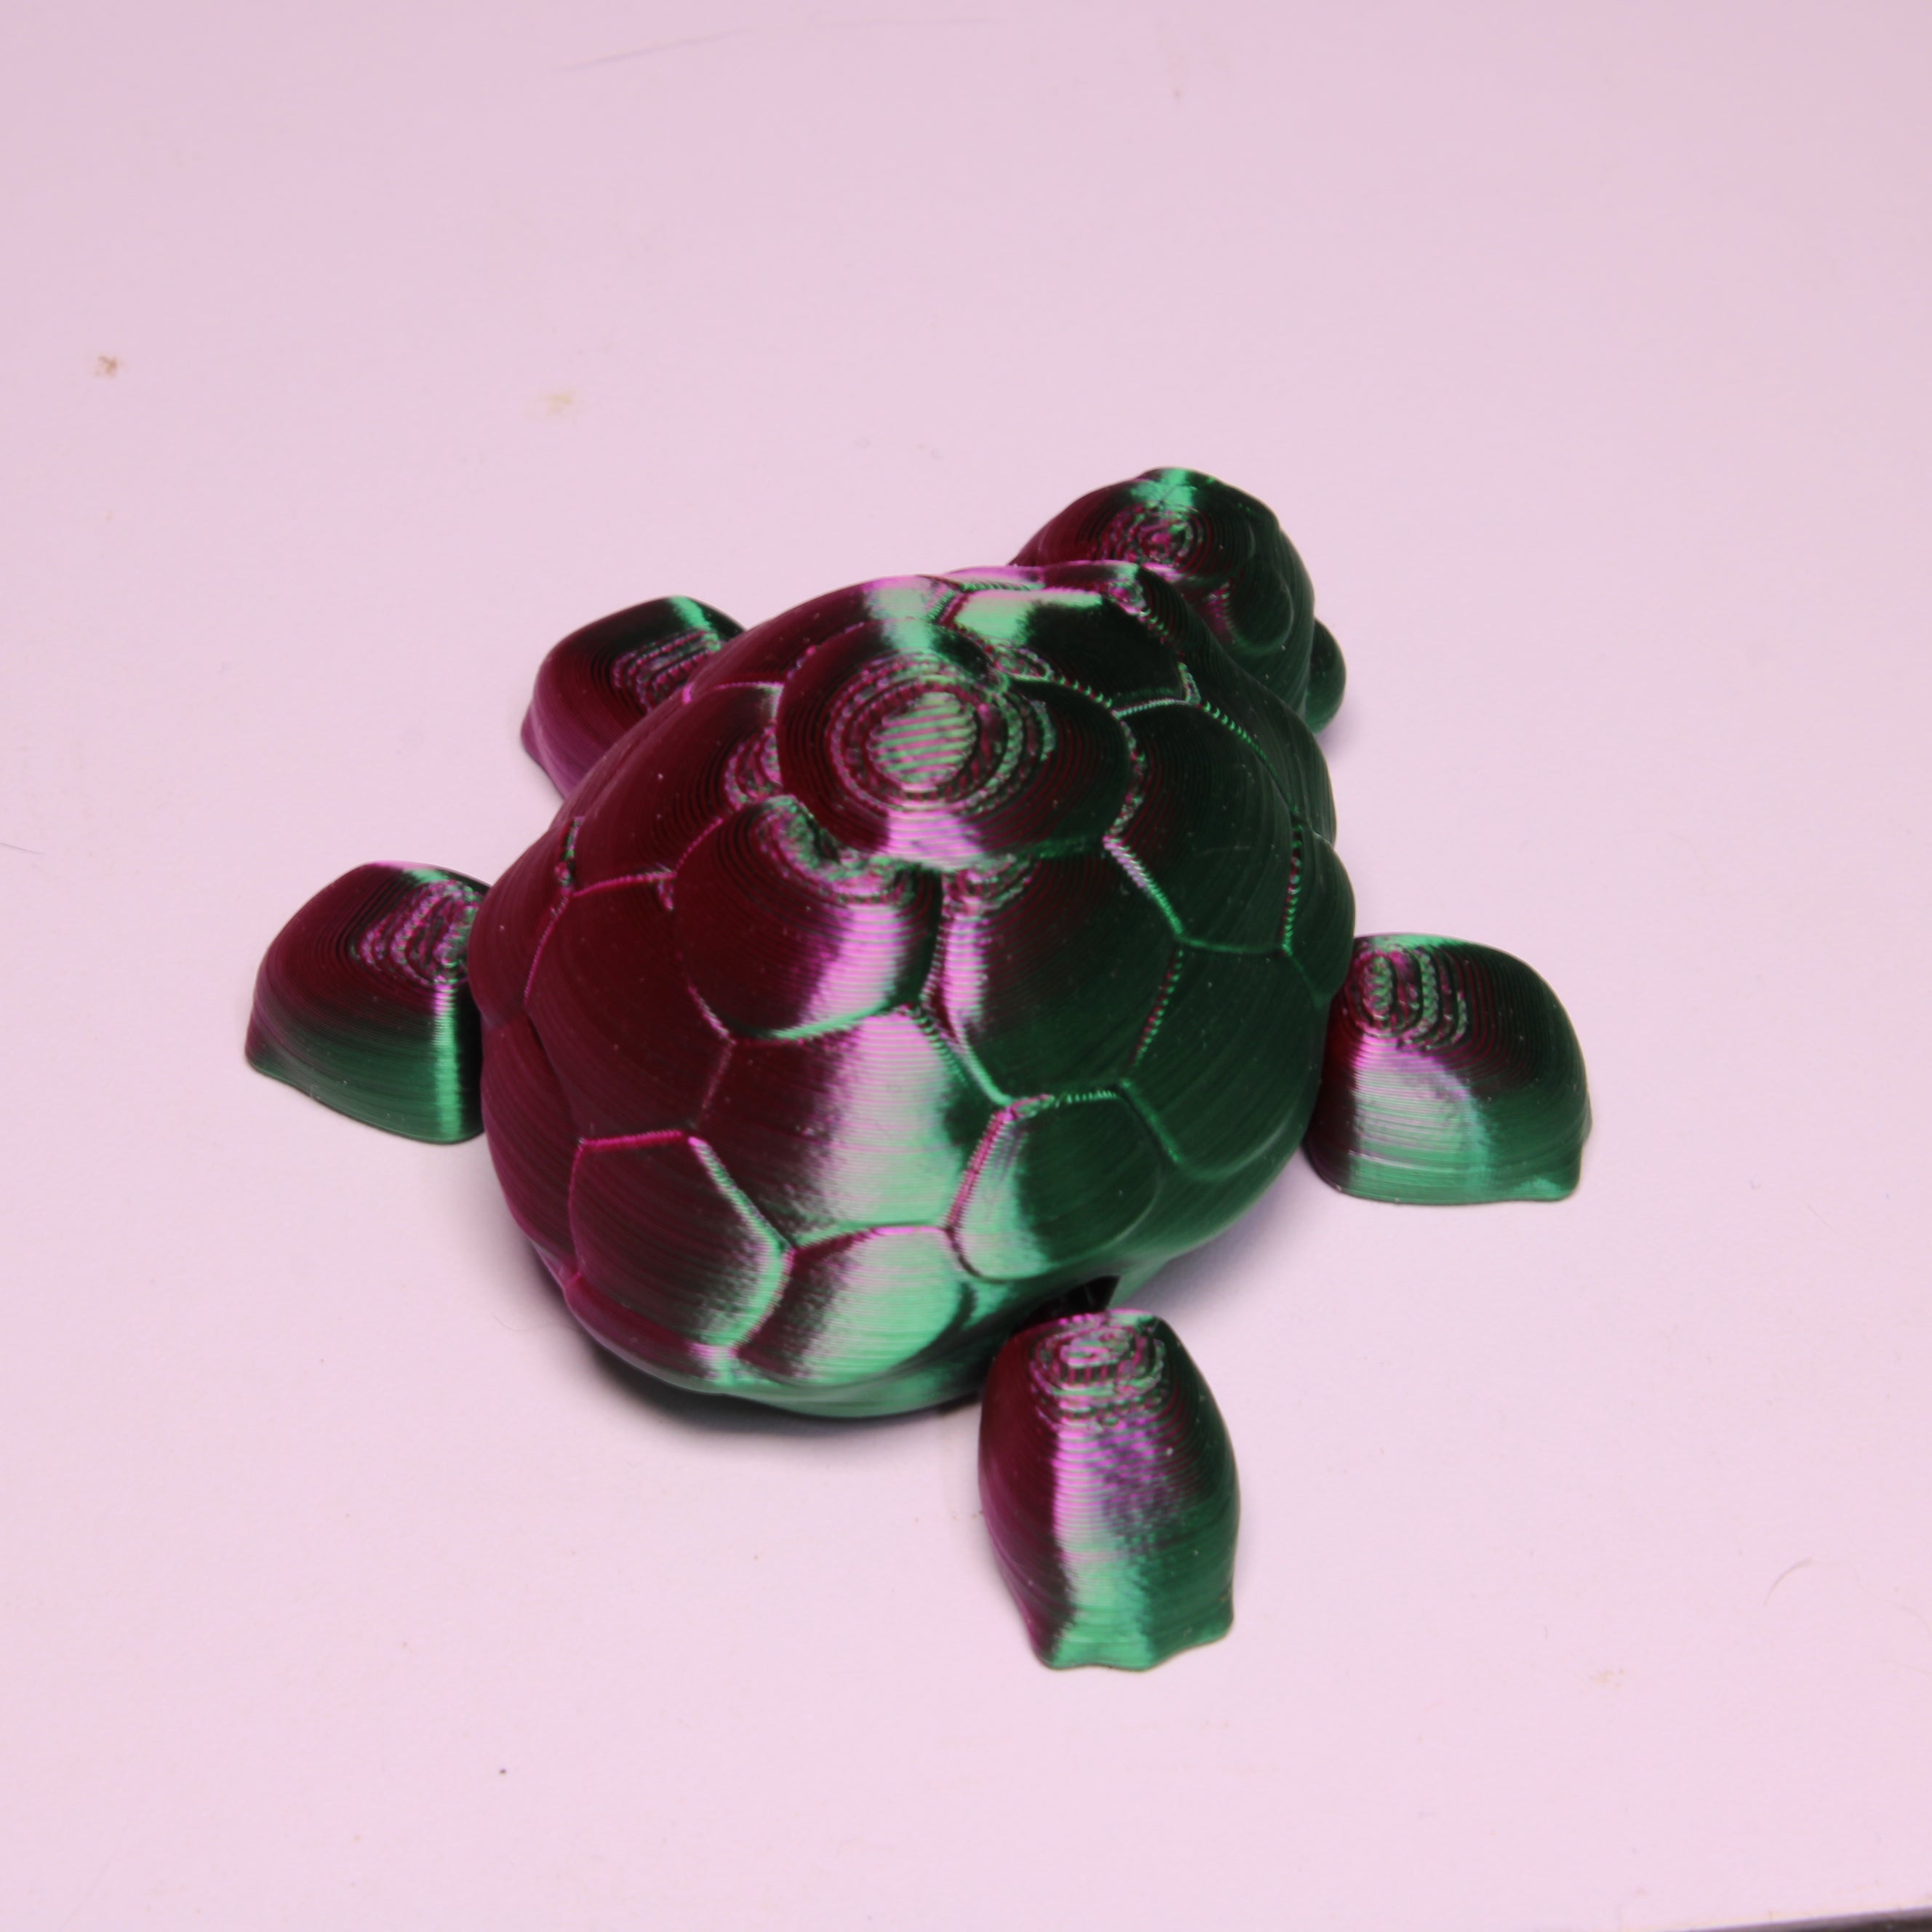 Miniature Turtle, multiple styles - 3D printed